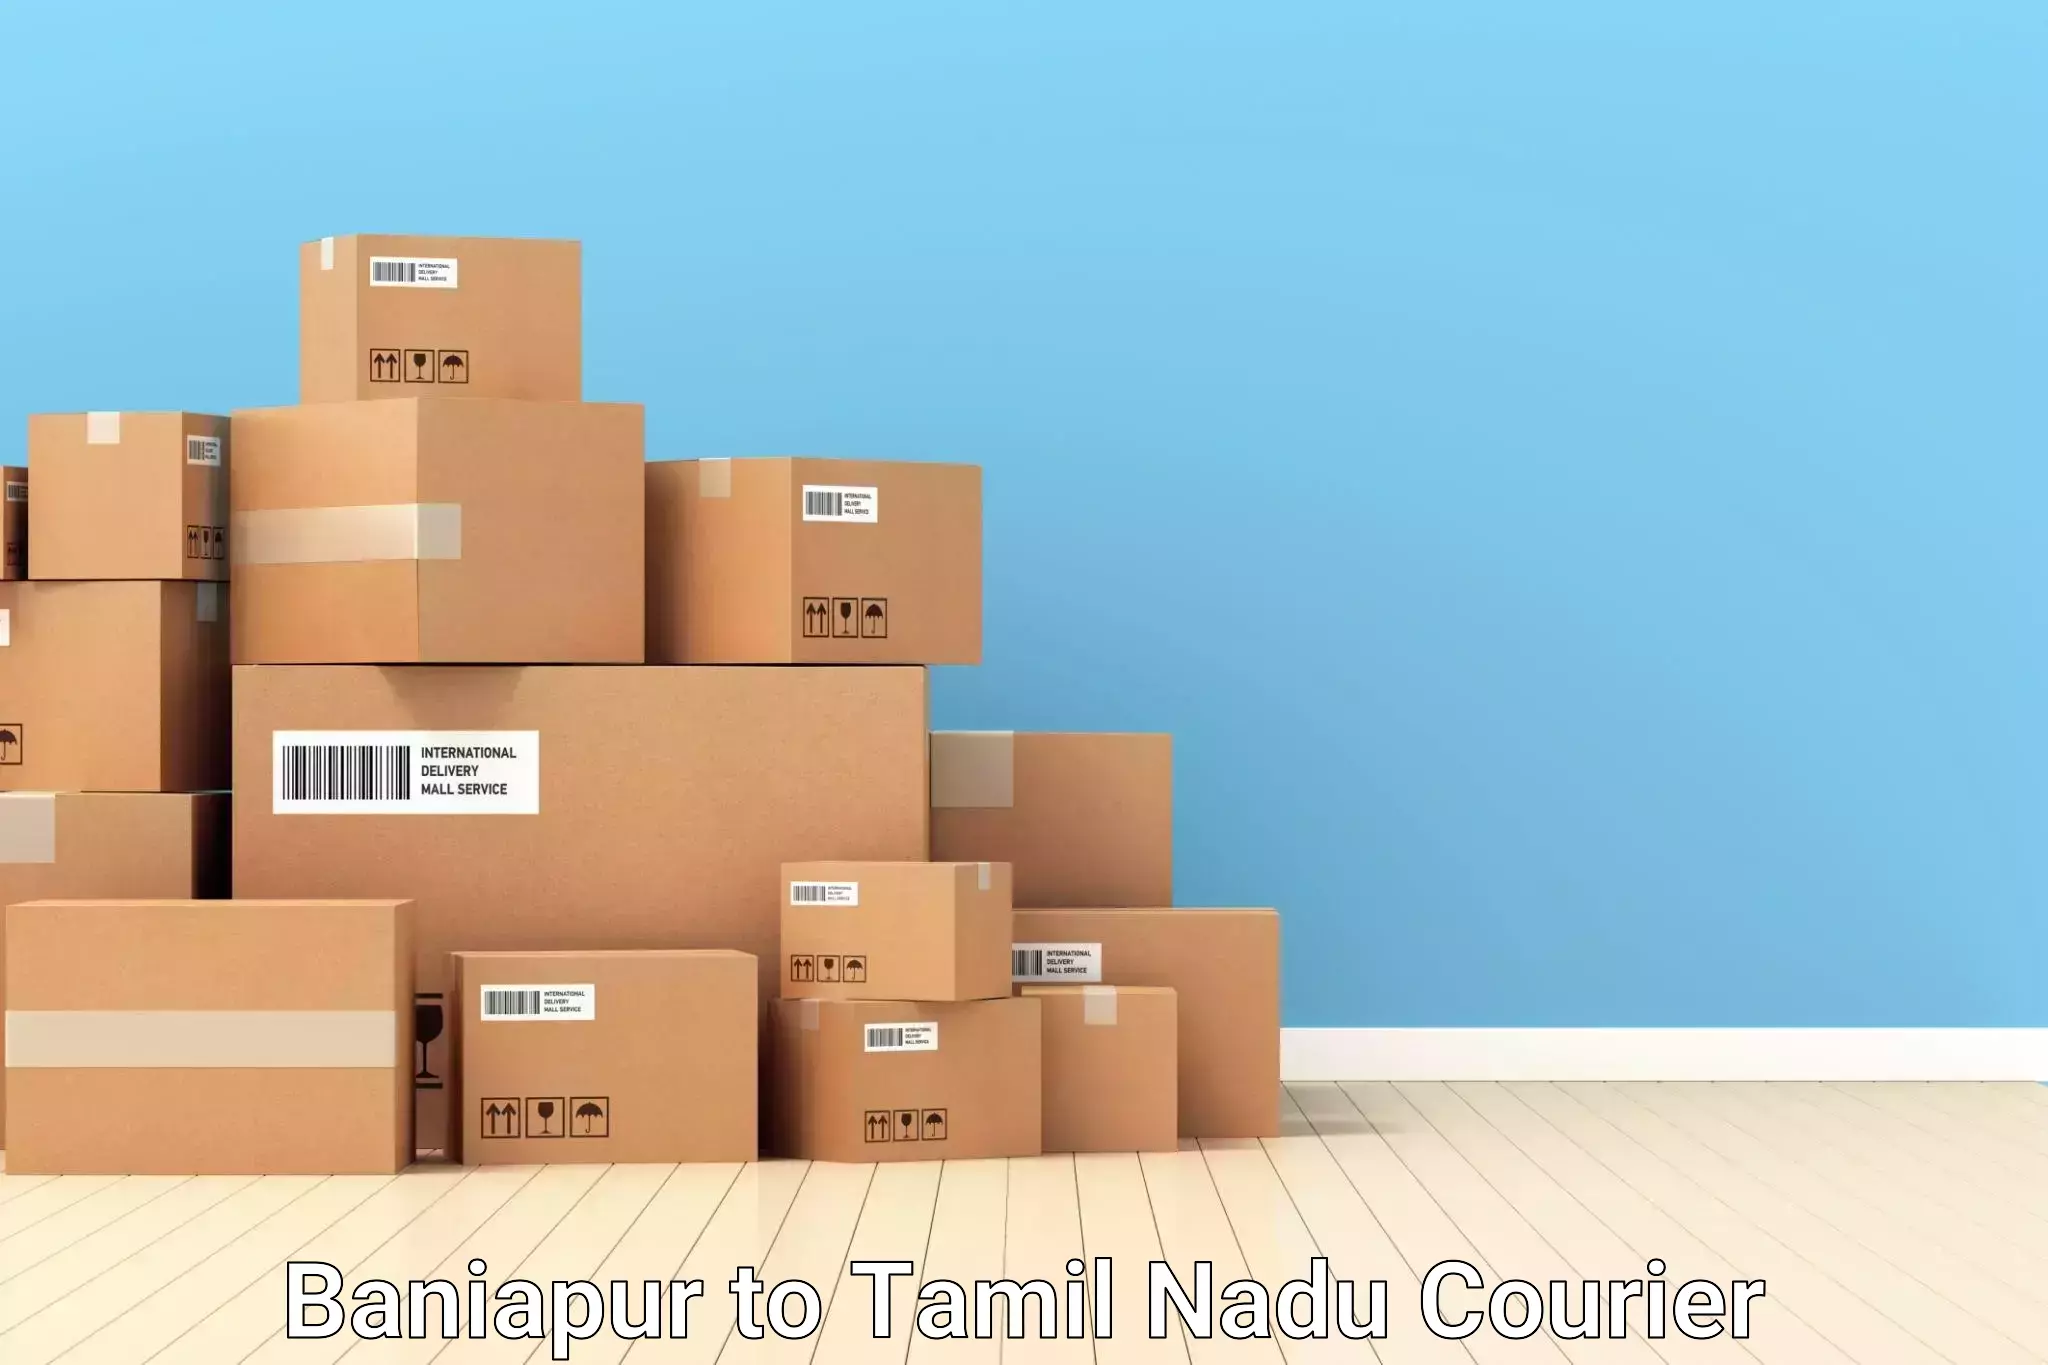 Baggage transport scheduler Baniapur to IIT Madras